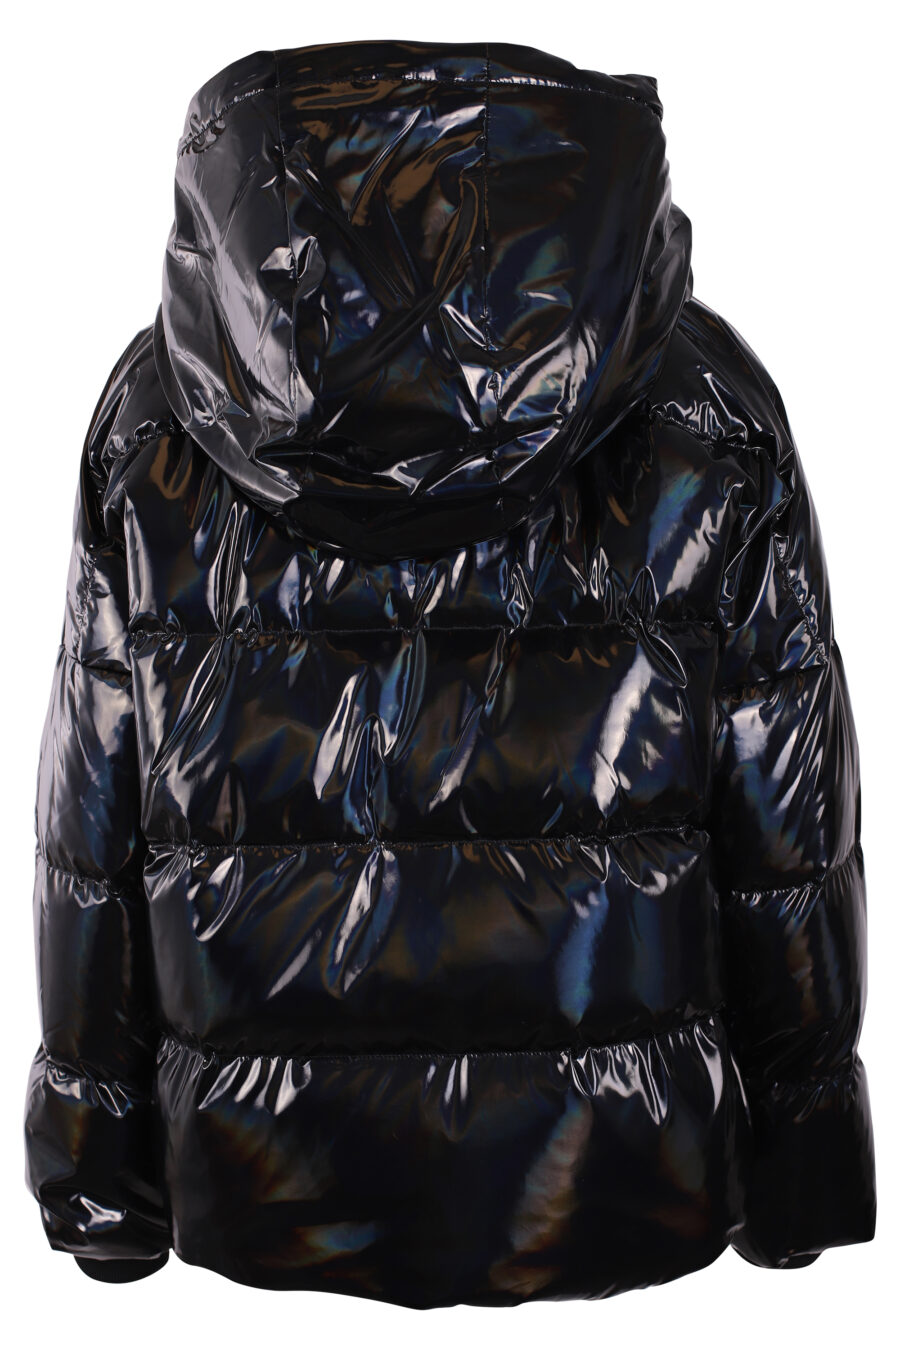 Iridescent black hooded jacket - IMG 3418